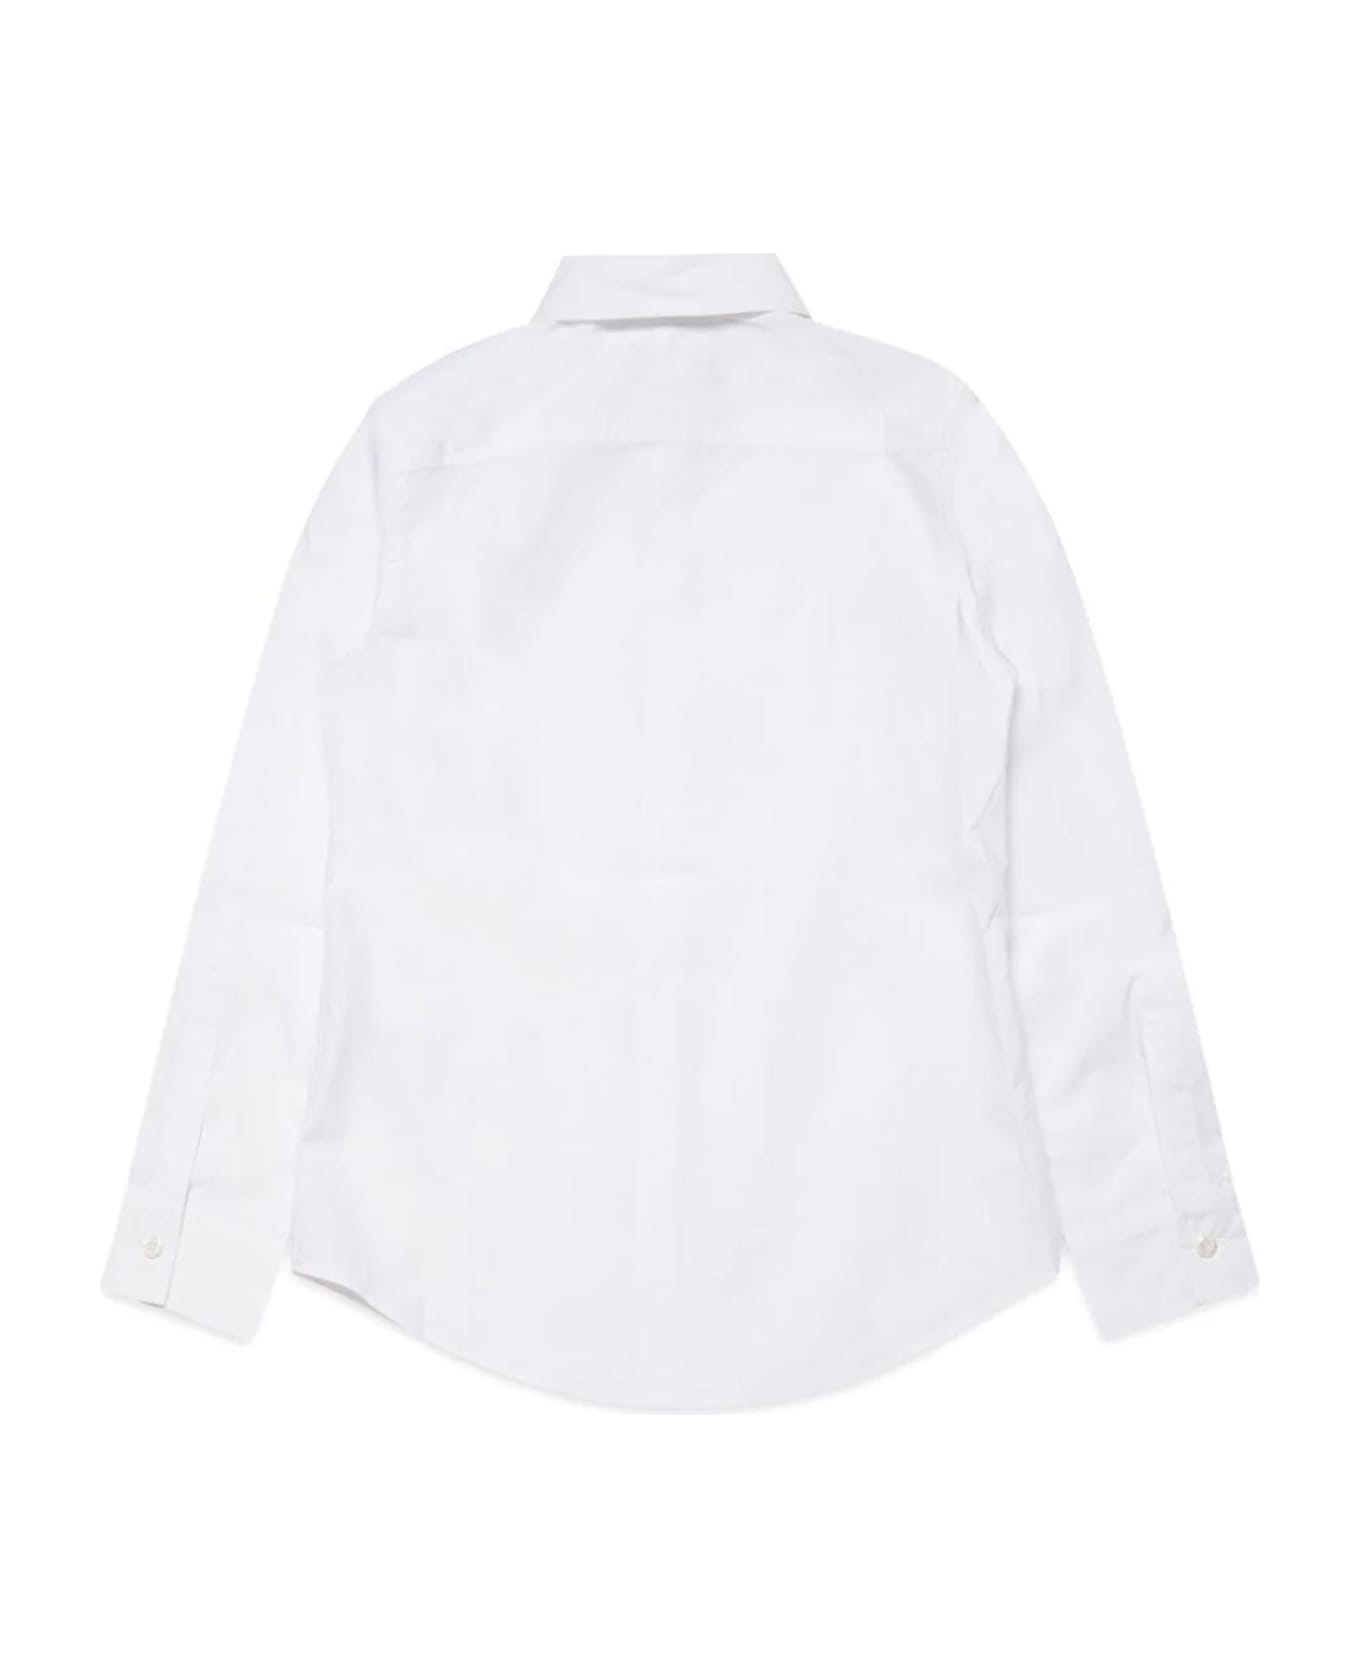 Dsquared2 Shirts White - White シャツ